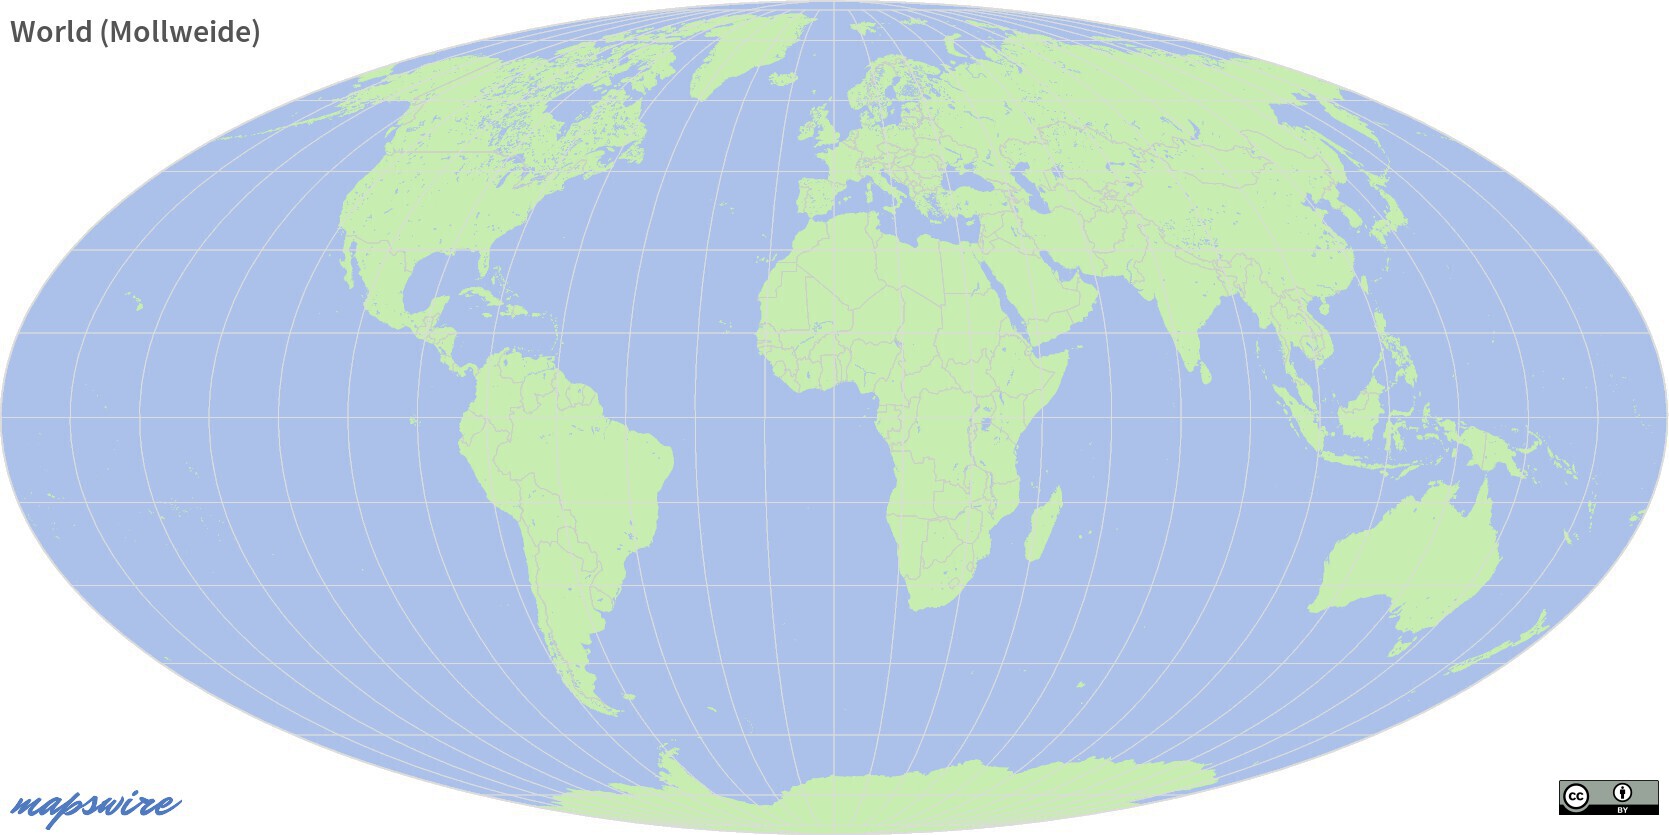 World (Mollweide) – License: CC BY 4.0